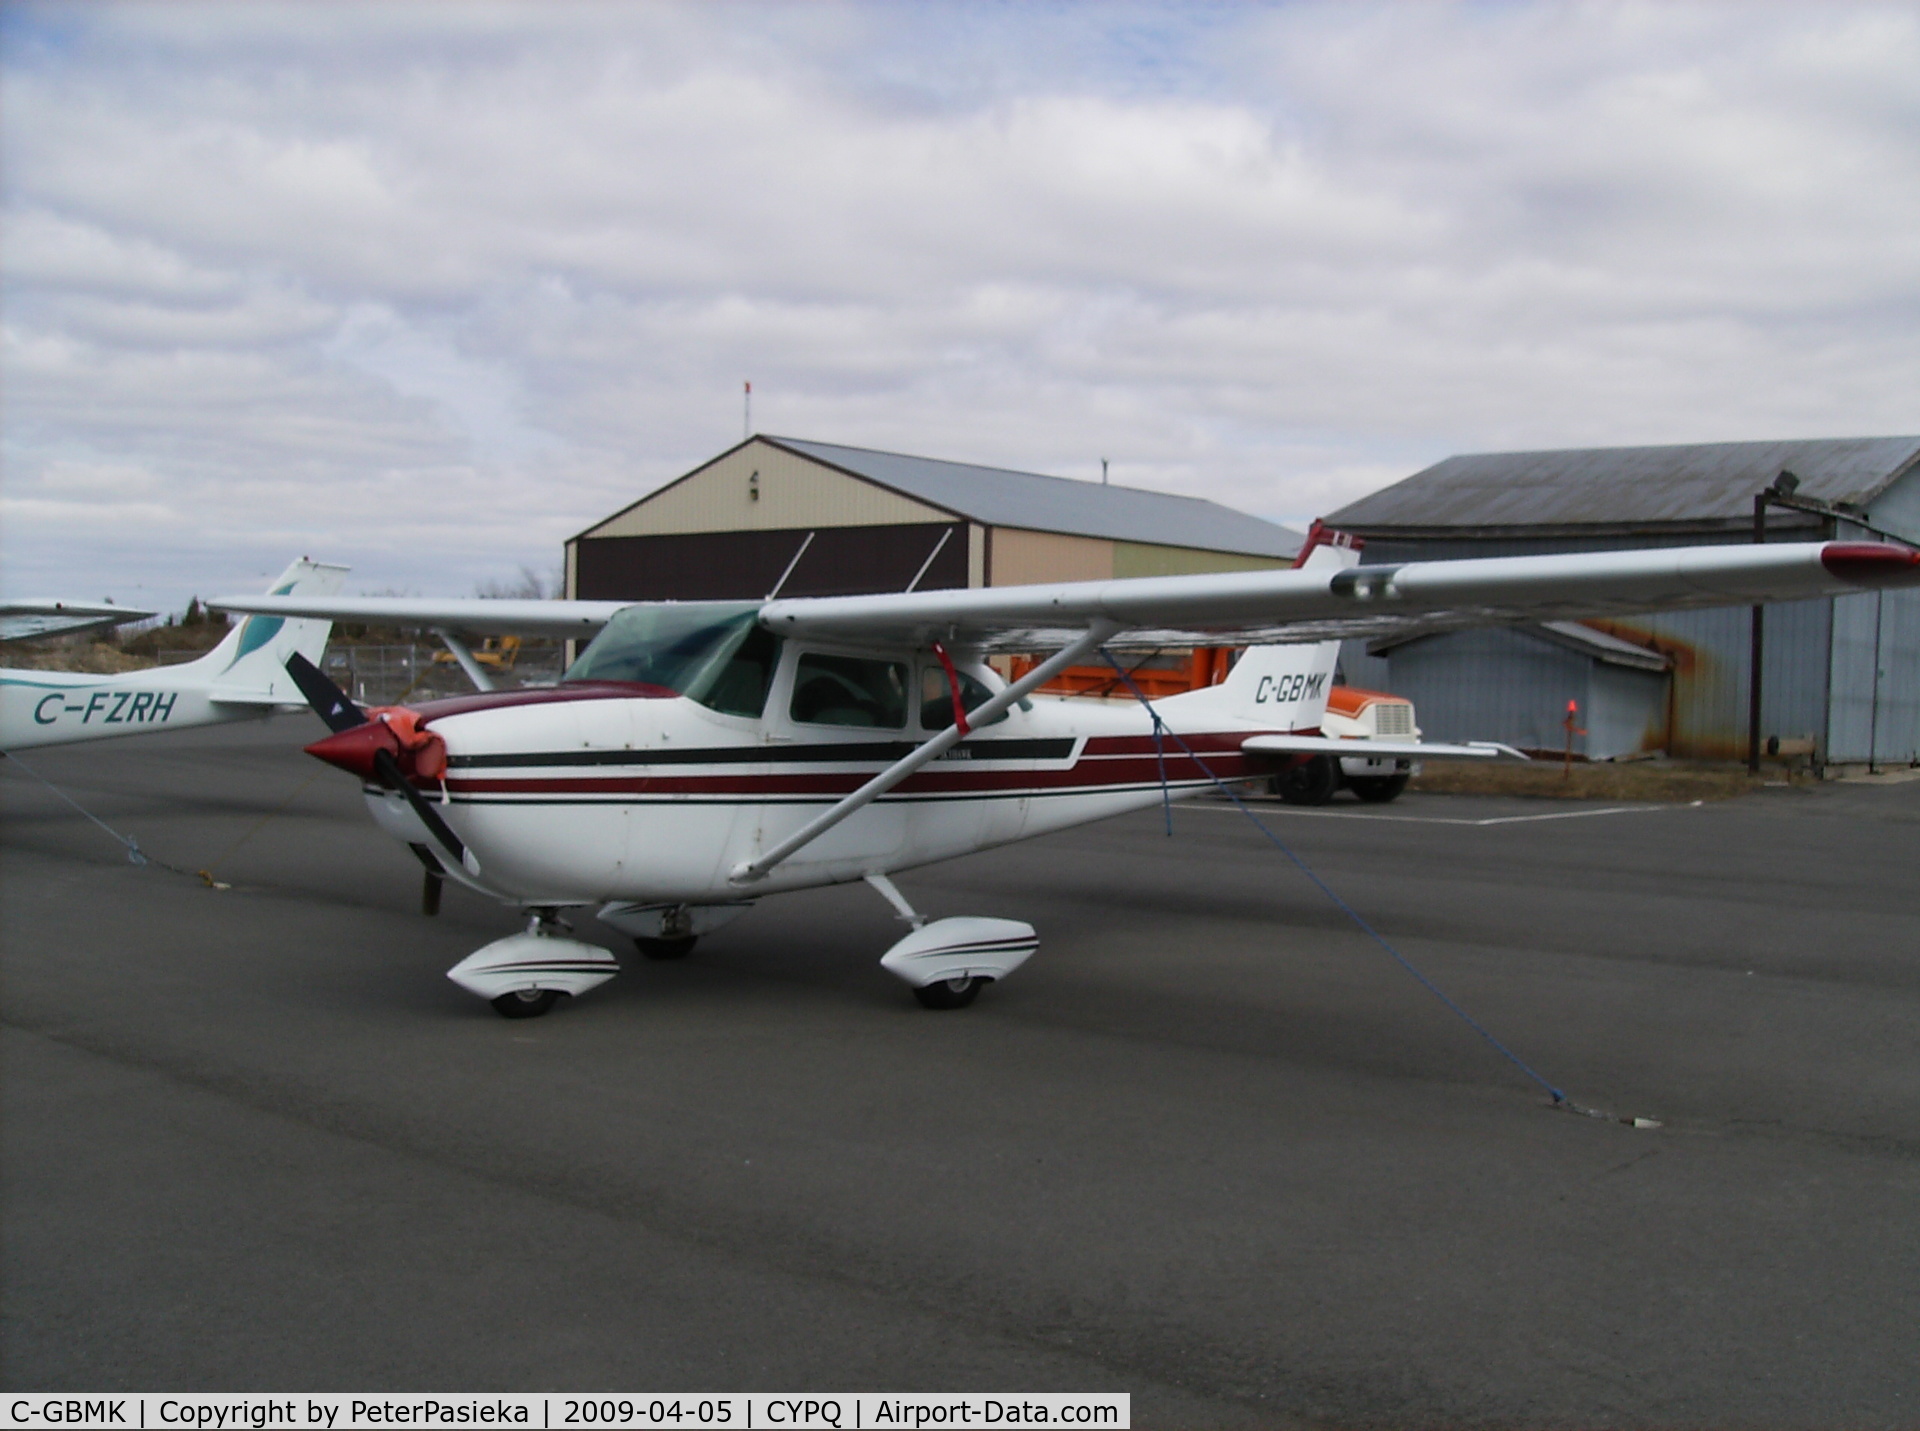 C-GBMK, 1968 Cessna 172I C/N 17256913, @ Peterborough Airport, Ontario Canada